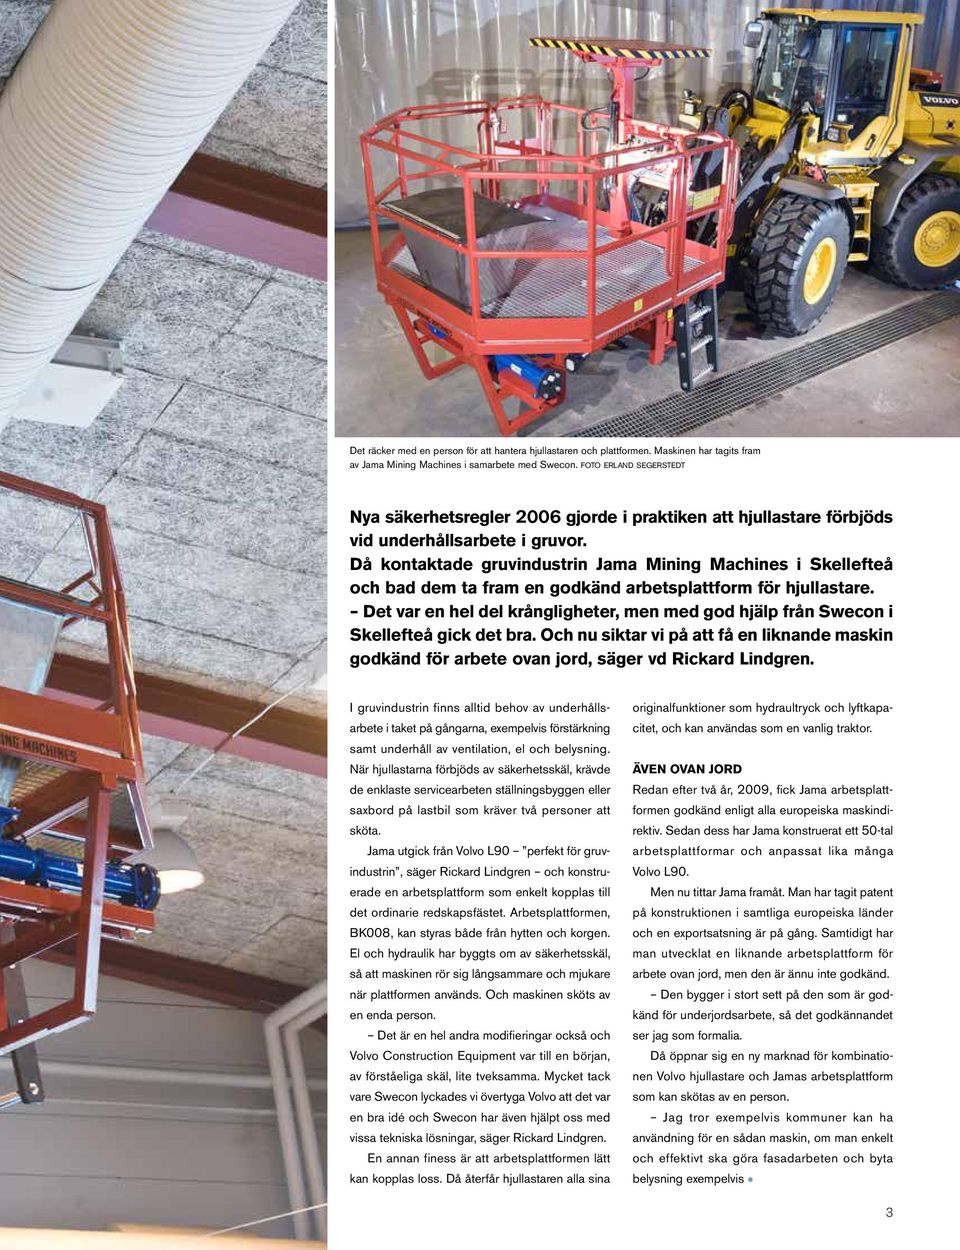 Då kontaktade gruvindustrin Jama Mining Machines i Skellefteå och bad dem ta fram en godkänd arbetsplattform för hjullastare.